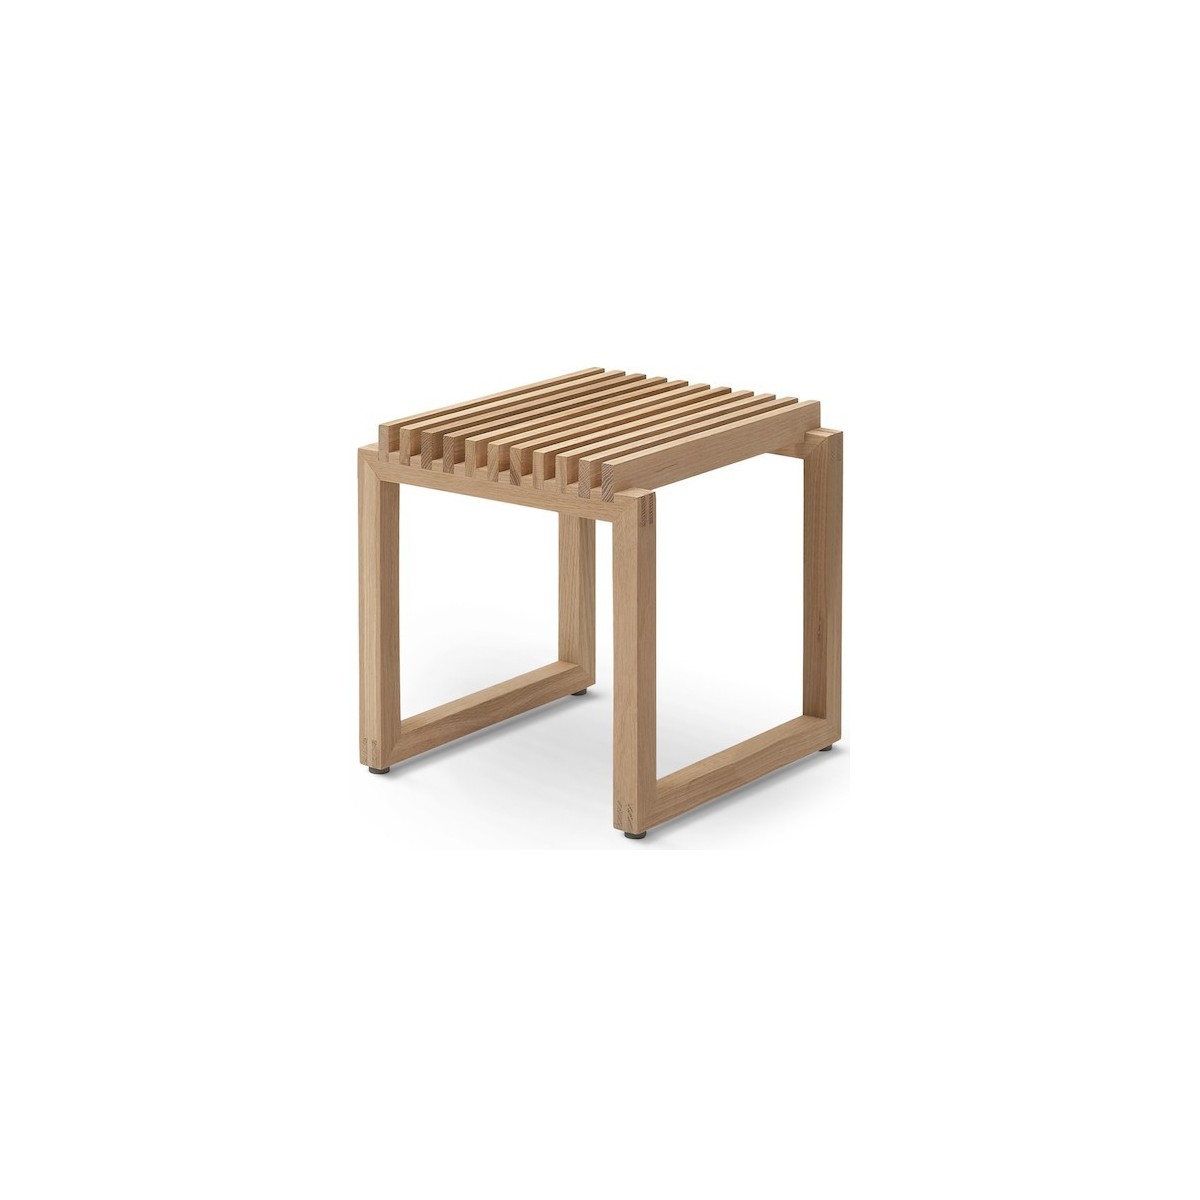 oak - Cutter stool